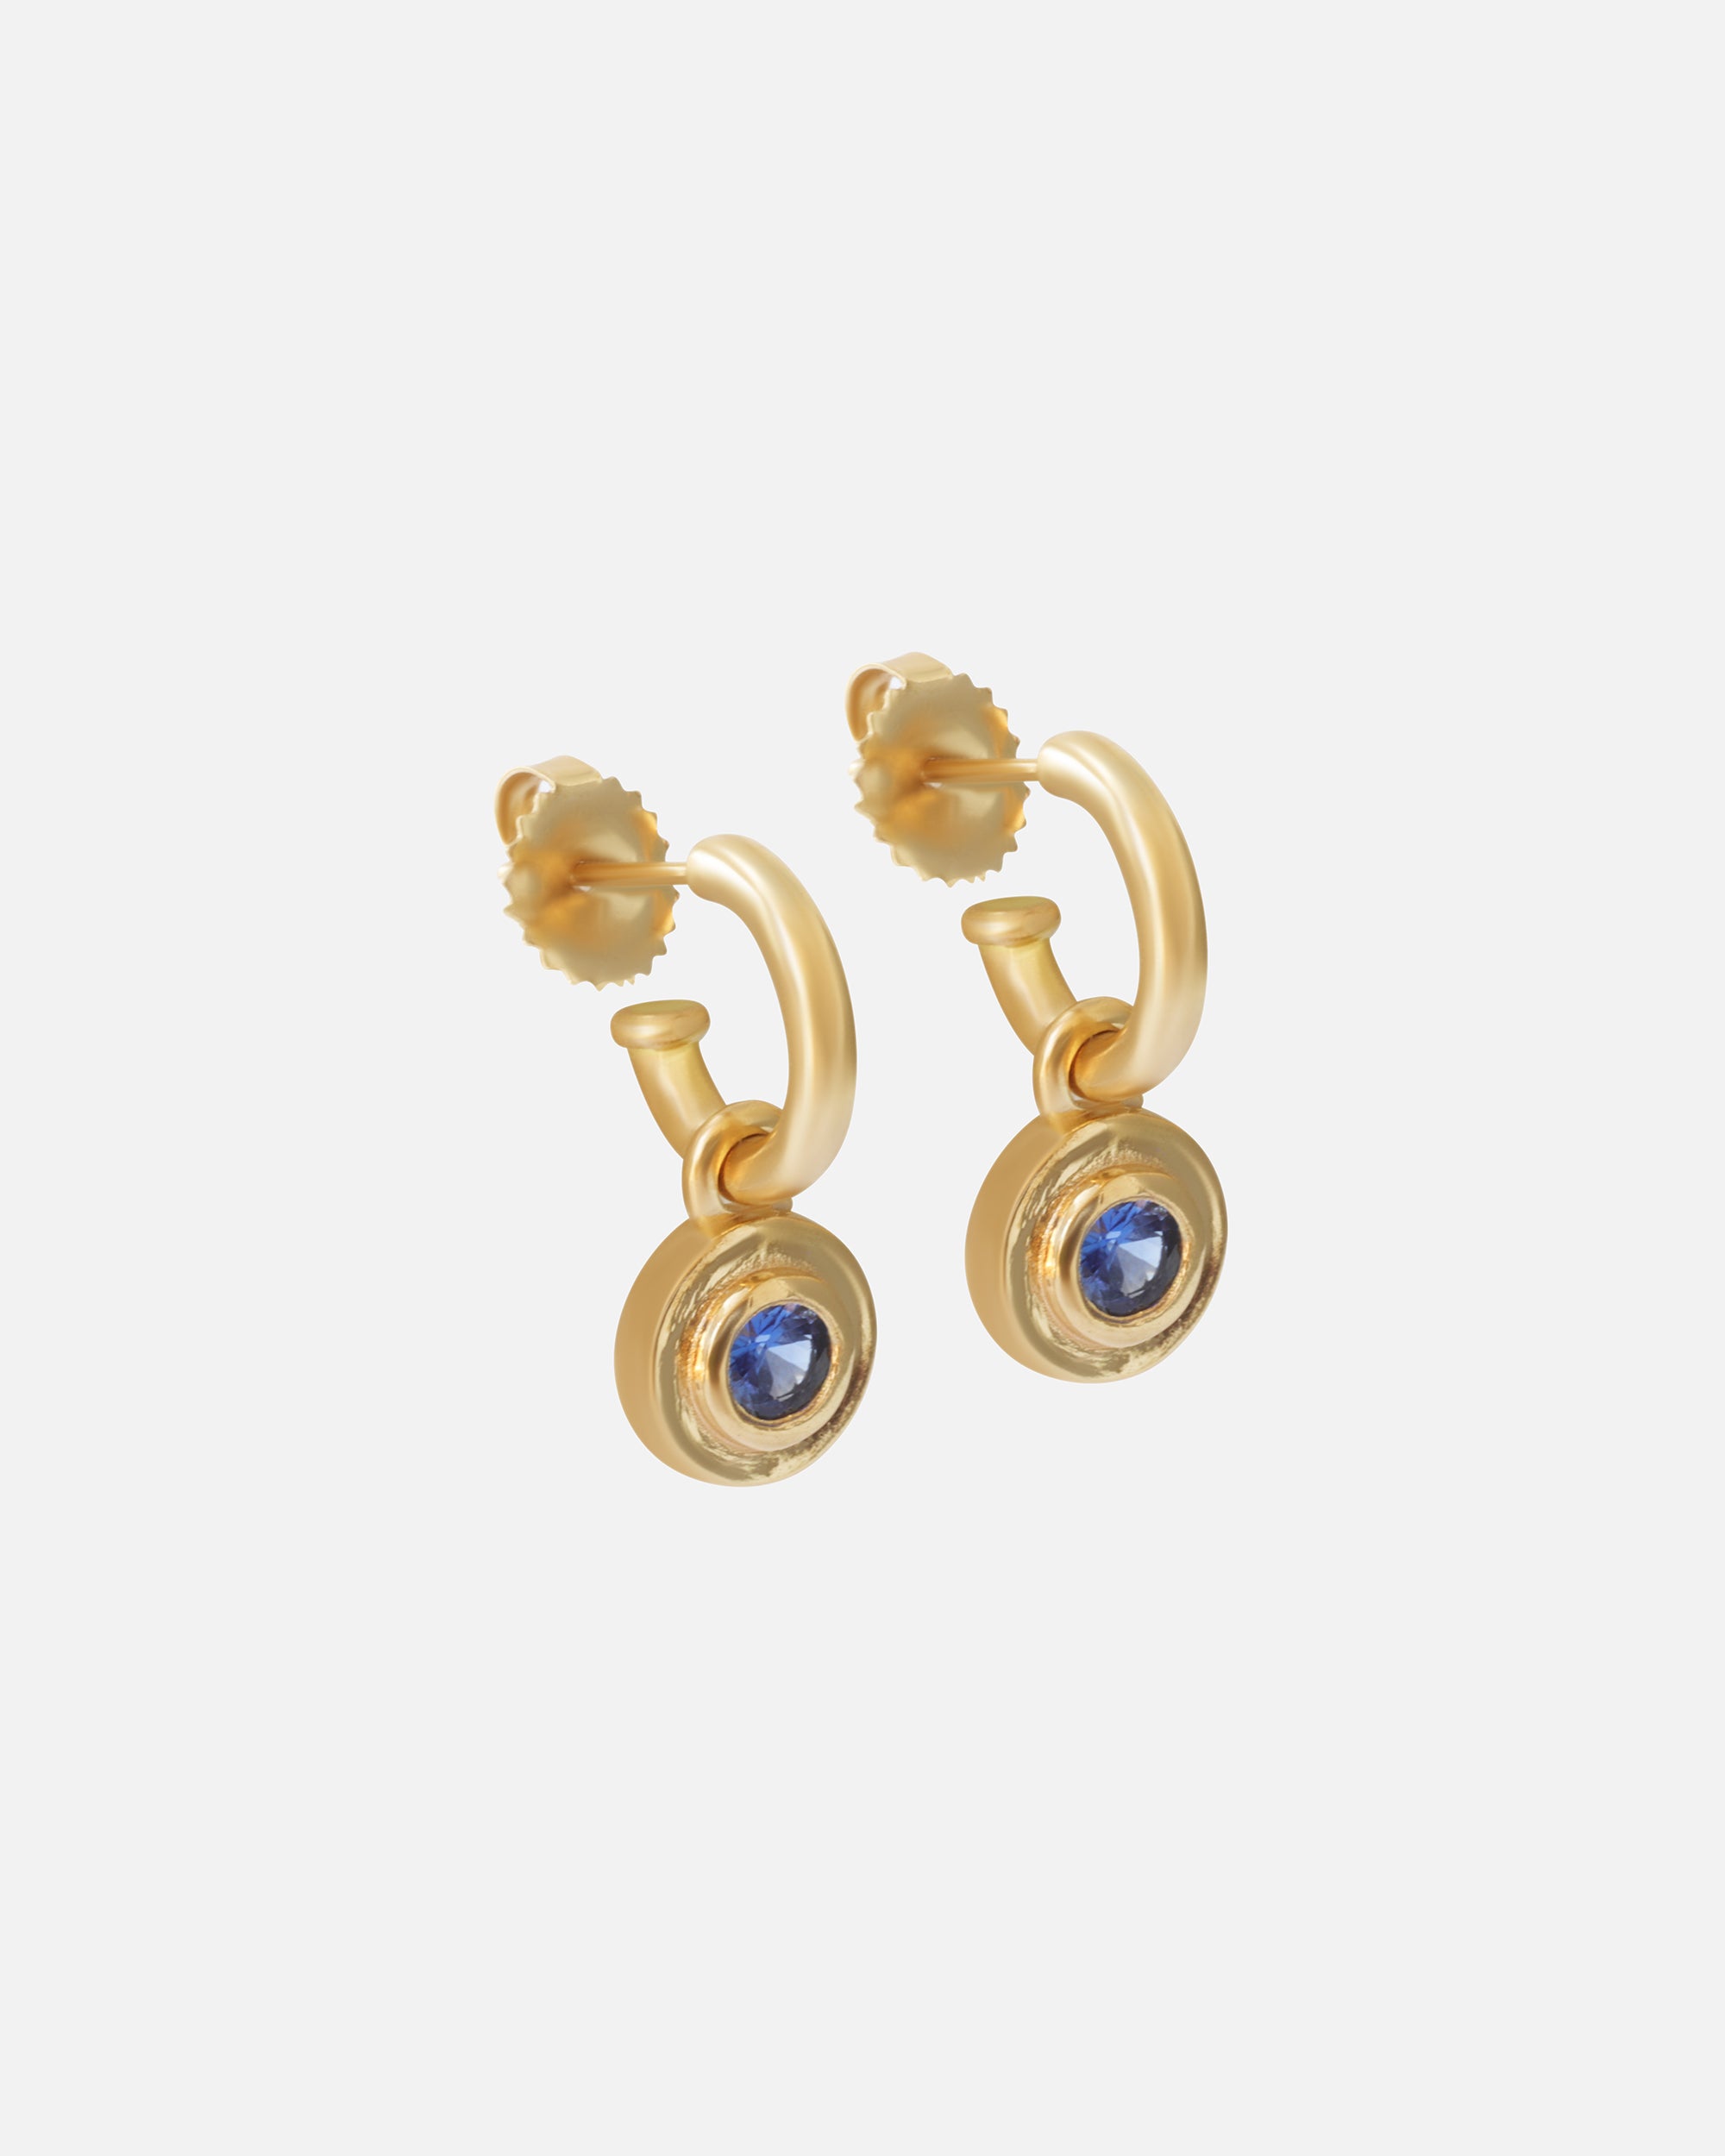 Hoops / Blue Sapphire Drops By Bree Altman in earrings Category